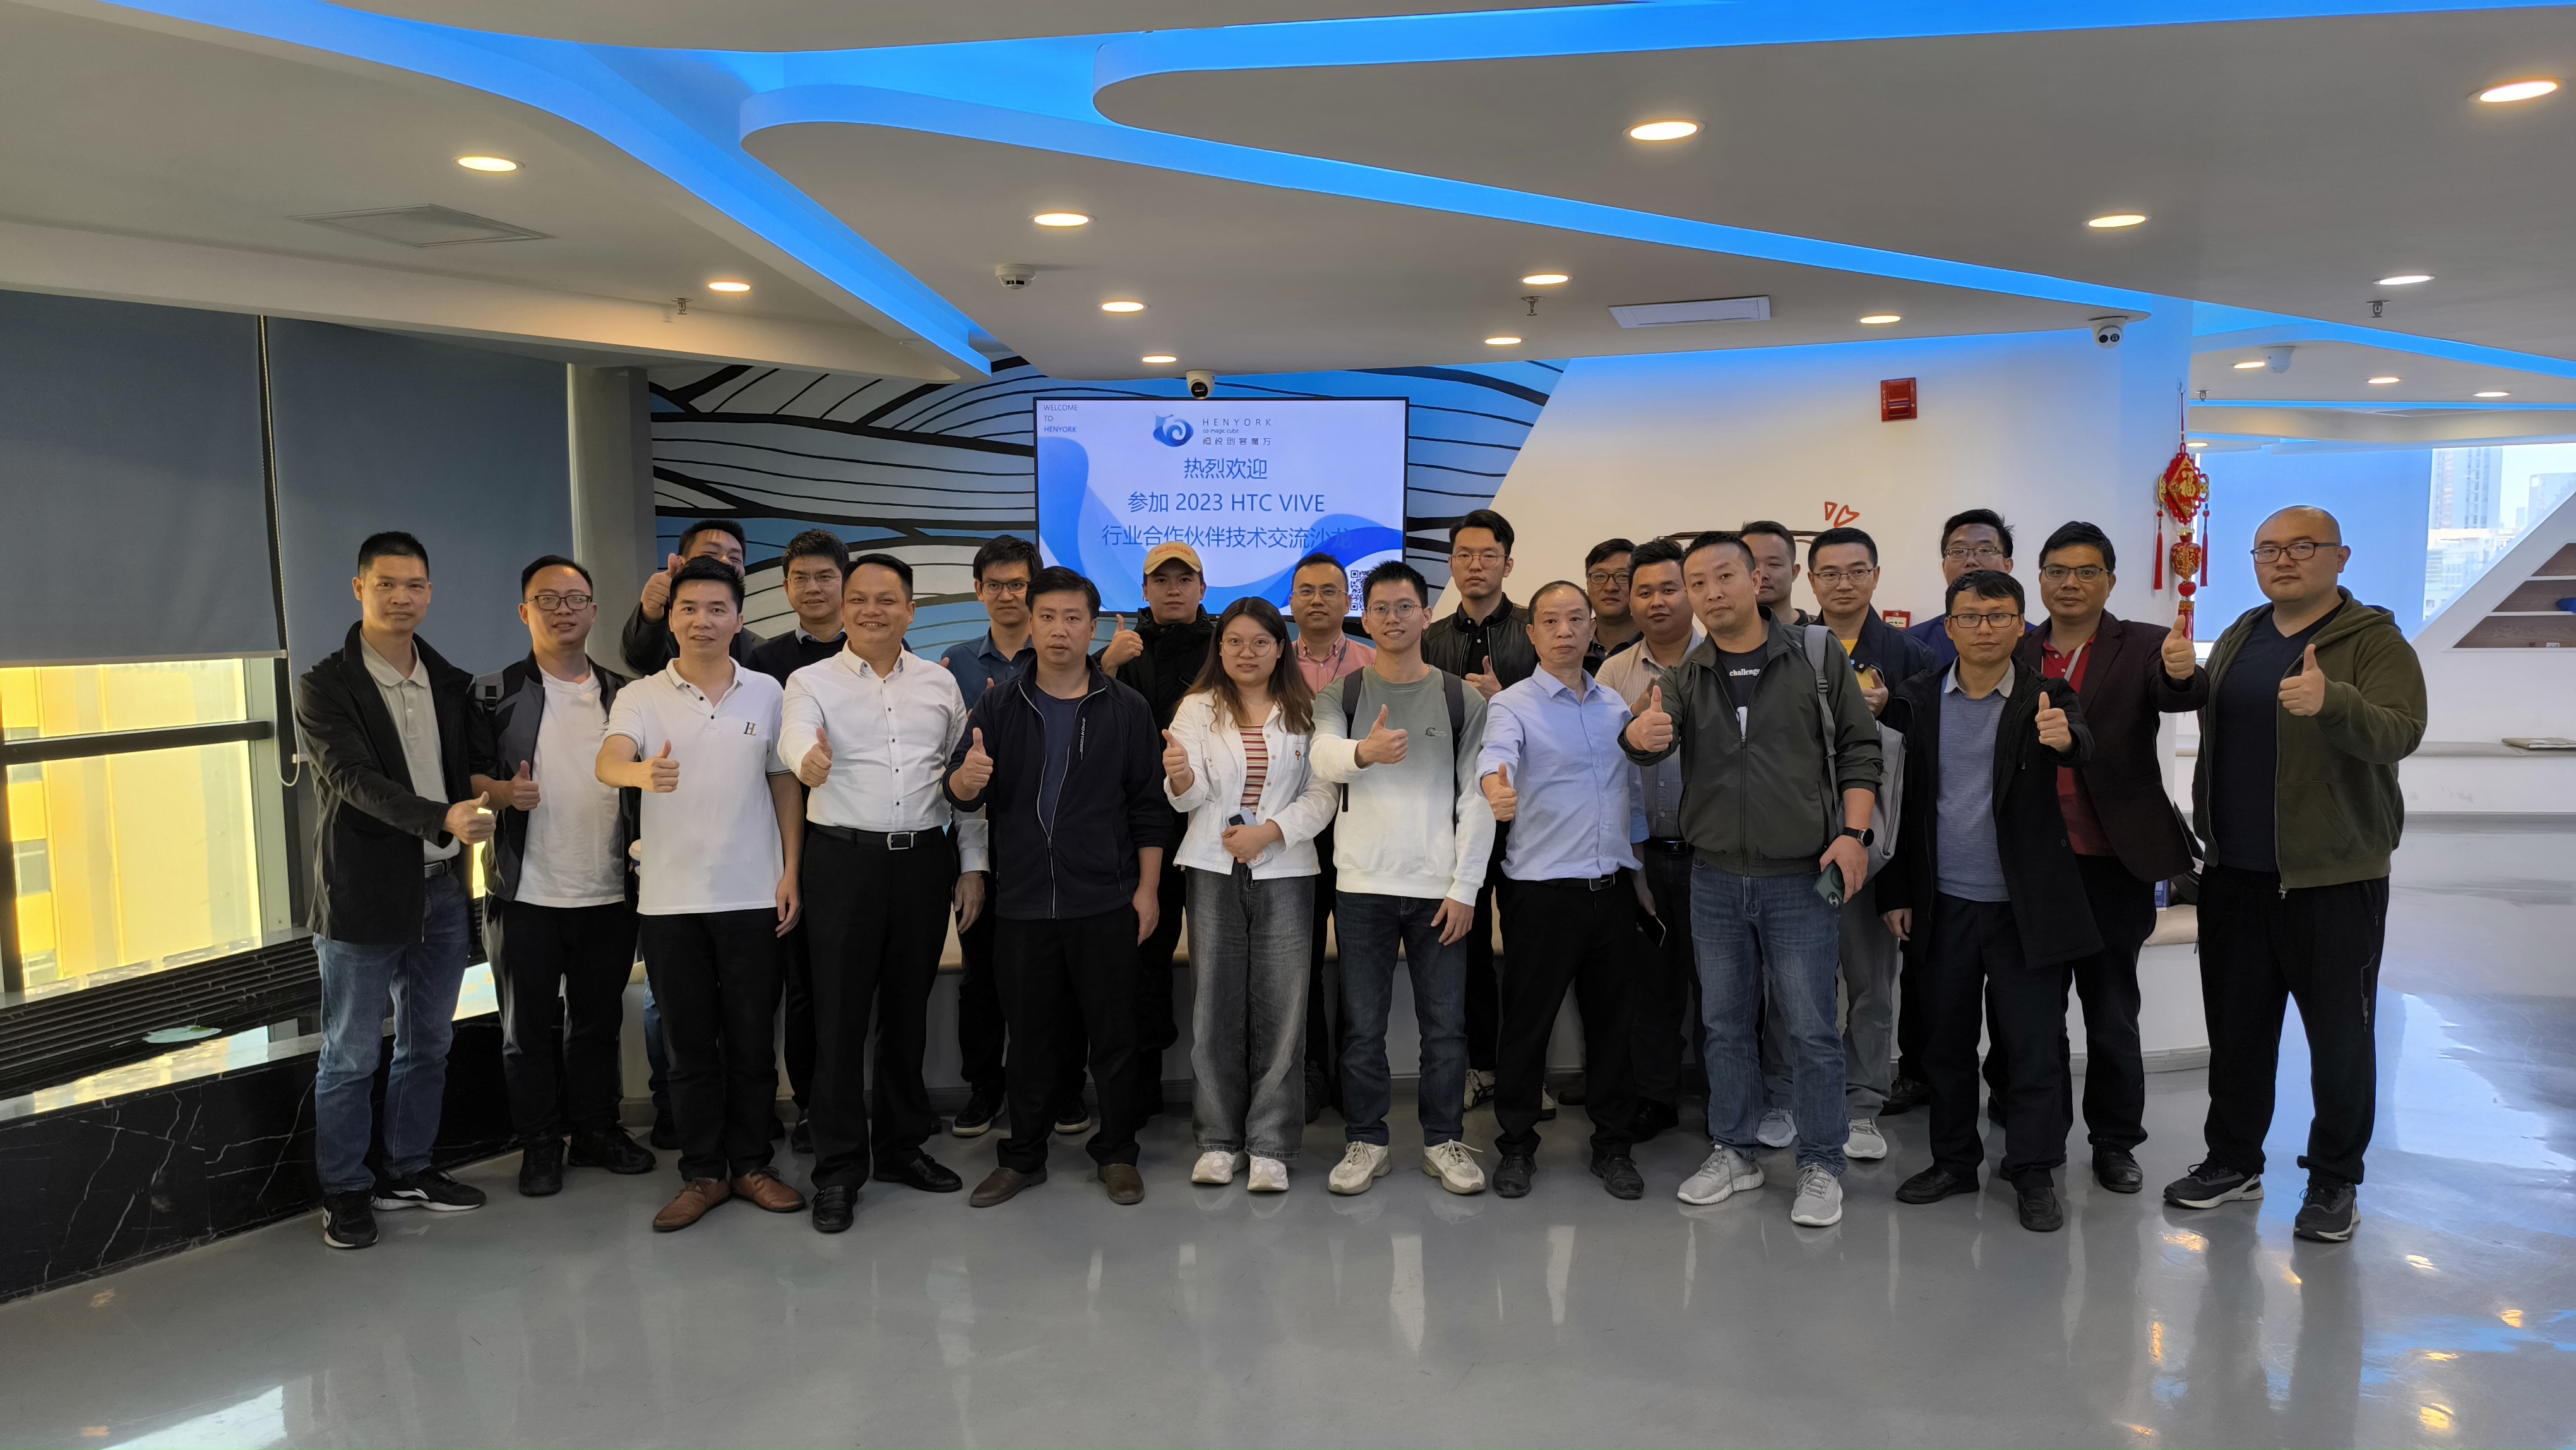 HTC VIVE行业合作伙伴技术交流沙龙在深圳顺利举办